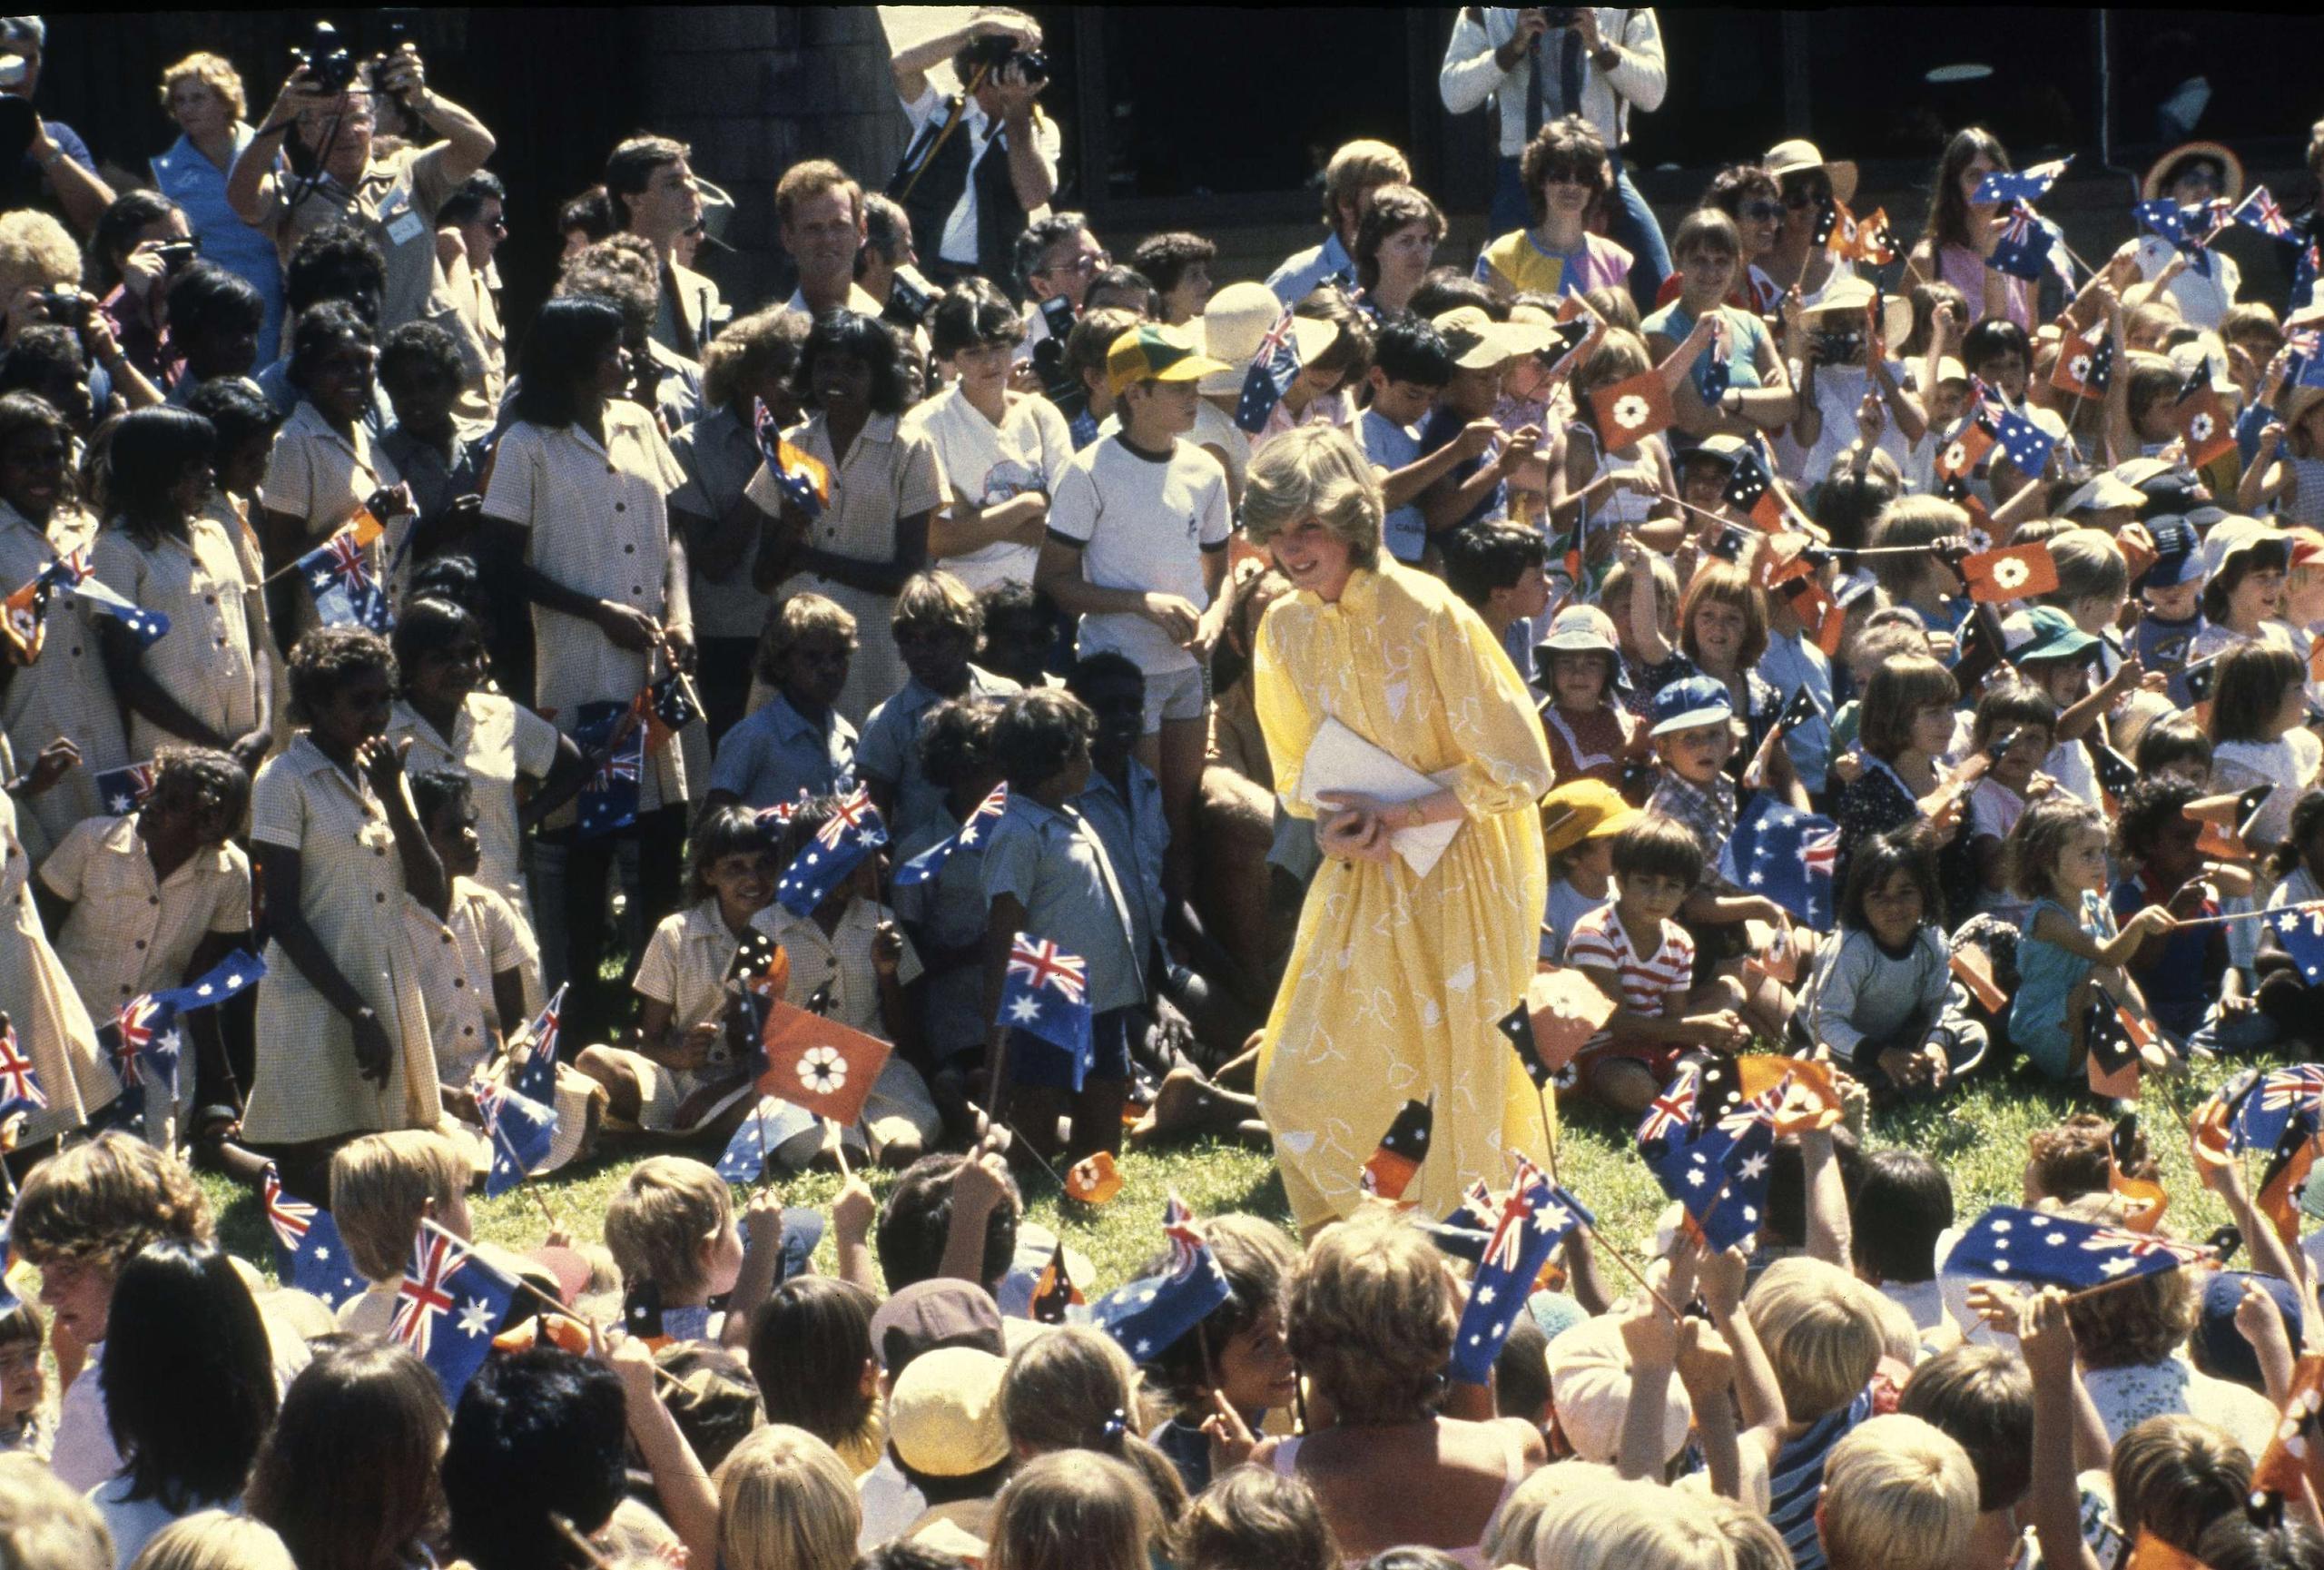 ARCHIVO – En esta fotografía del 21 de marzo de 1983 Diana la princesa de Gales entre un grupo grande de niños escolares durante su visita a Alice Springs, Australia. La princesa Diana, que era considerada tímida al saltar a la fama, se convirtió en una revolucionaria en sus años en la Casa de Windsor modernizando la monarquía como una institución más personal y cambiando la forma en la que la familia real se relacionaba con la gente. (Foto AP/Dave Caulkin, archivo)